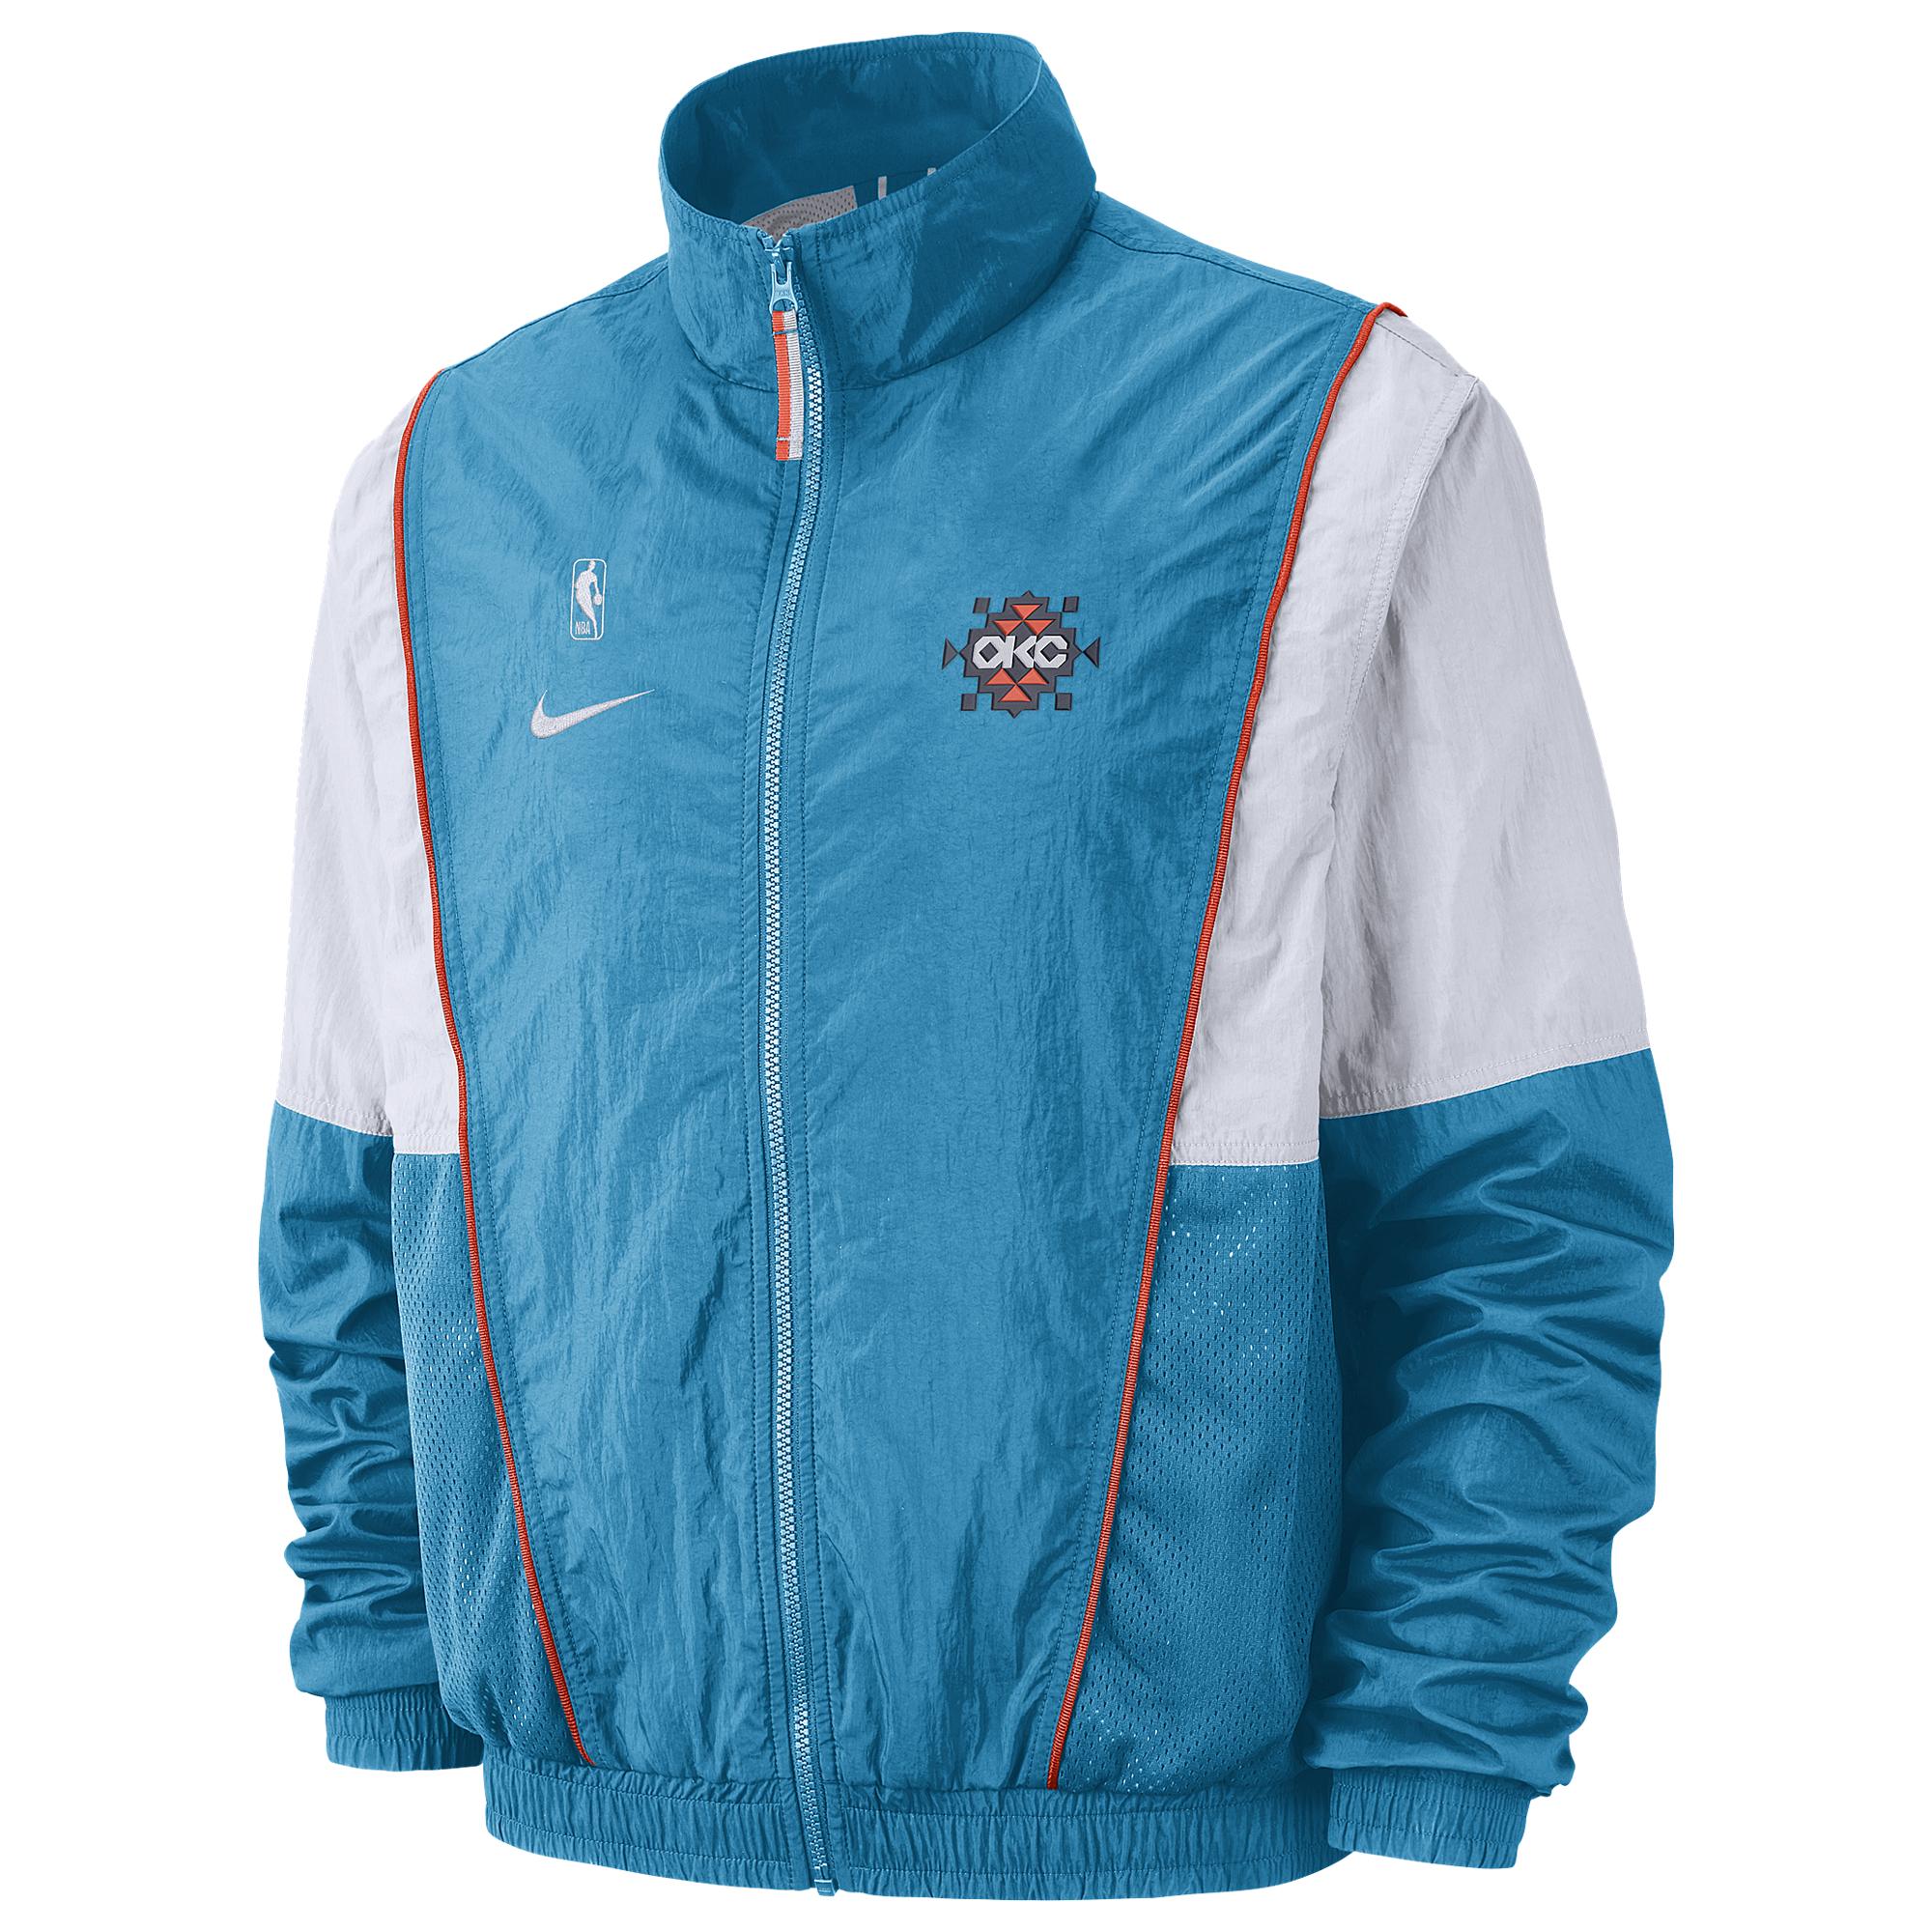 Nike Oklahoma City Thunder Nba Courtside City Edition Nylon Jacket in ...